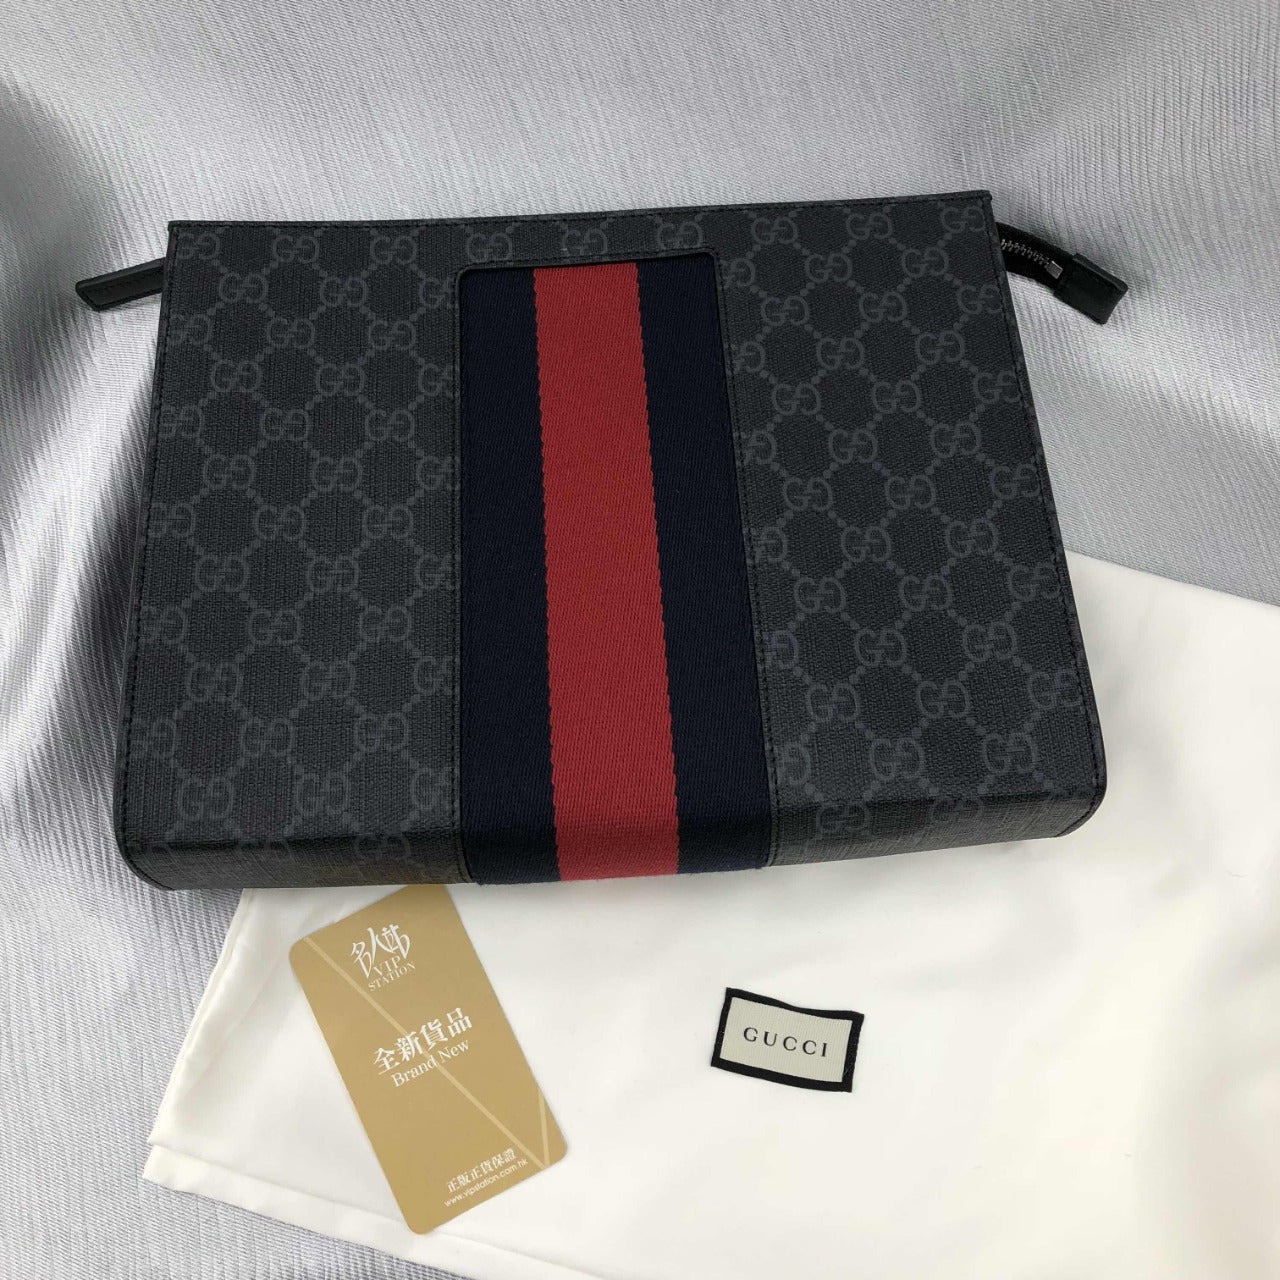 Gucci Black Colour Bag clutch handbag Best Quality Bag For Men?s Pouch GC-6872